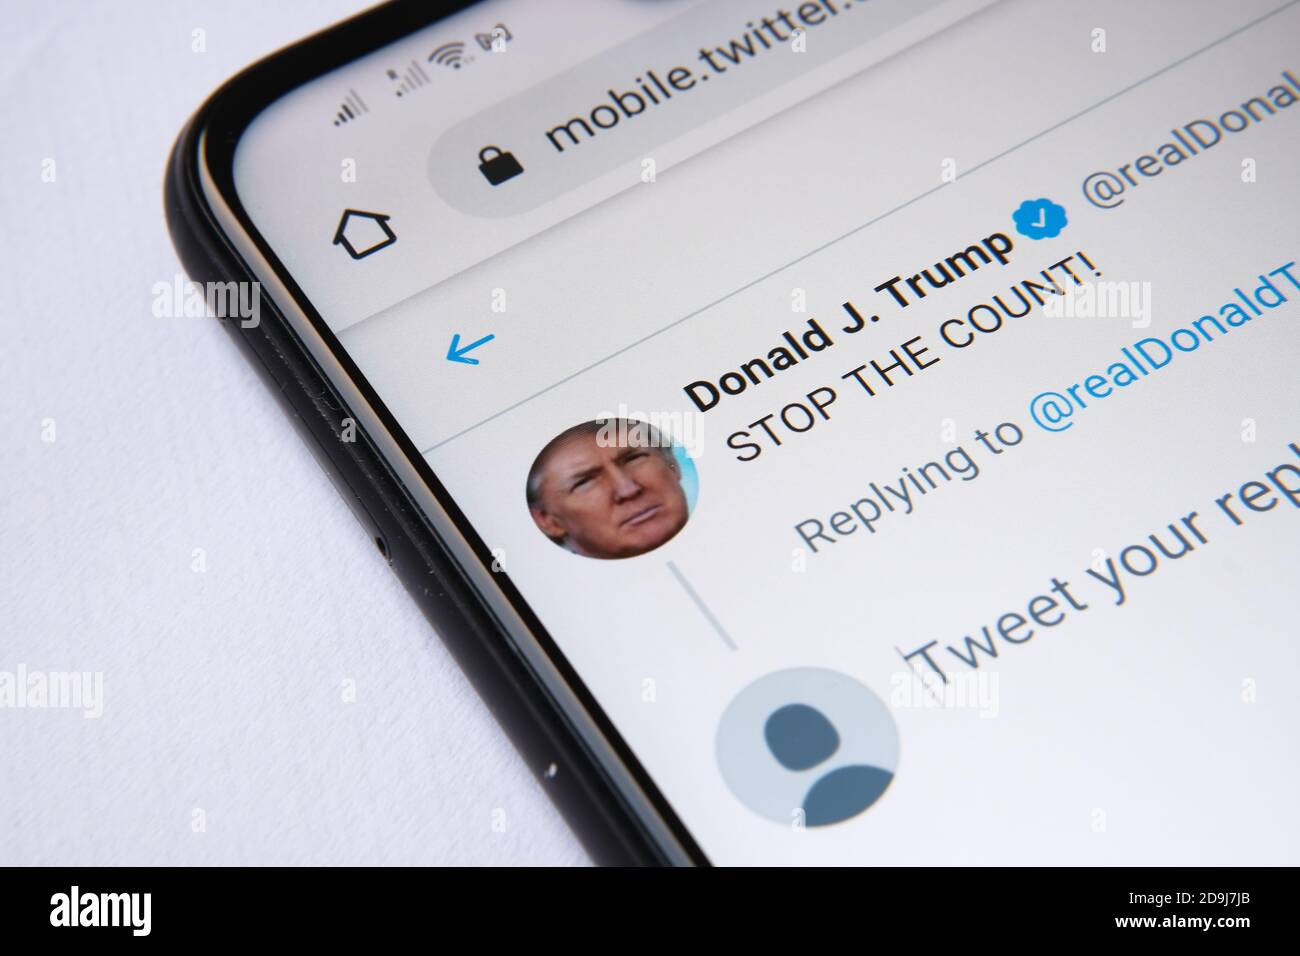 Donald Trumps twitter-Seite mit dem Beitrag "STOOP THE COUNT" auf dem Smartphone-Bildschirm zu sehen. Stockfoto